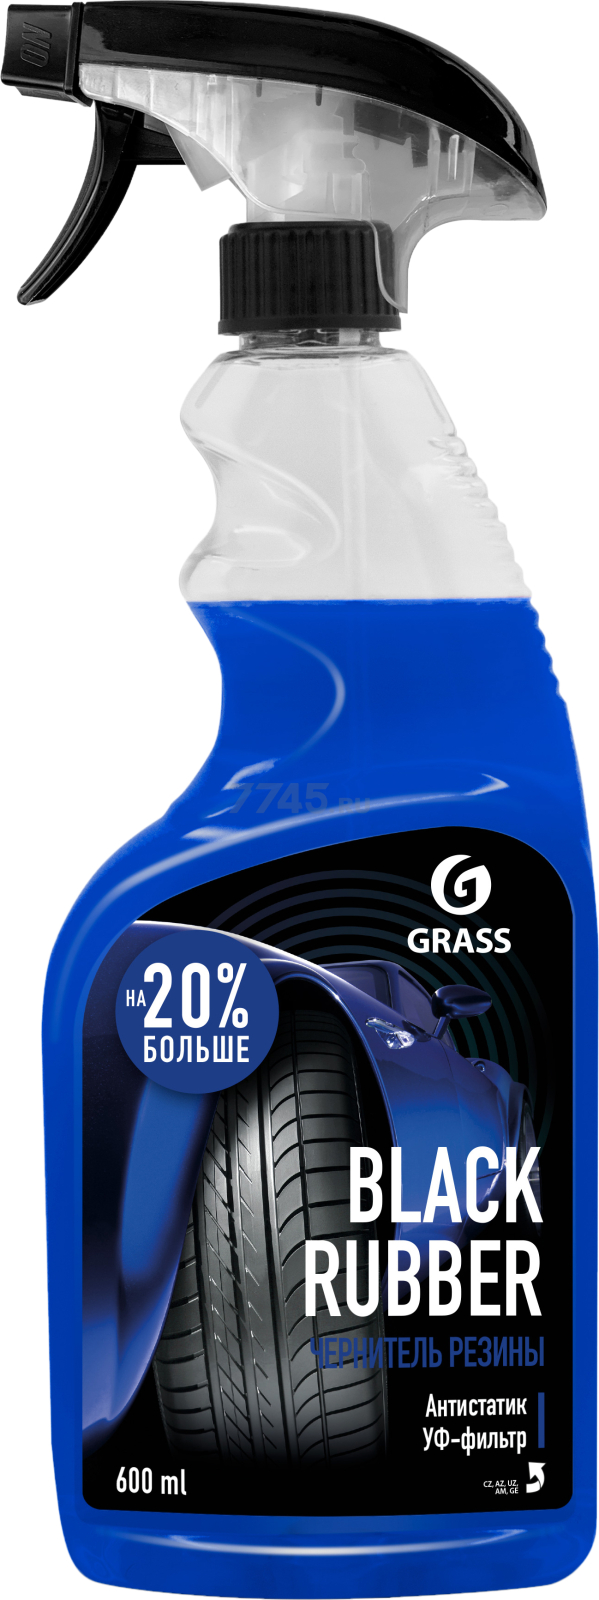 Средство GRASS полироль чернитель шин "Black rubber" (флакон 600 мл) 110384